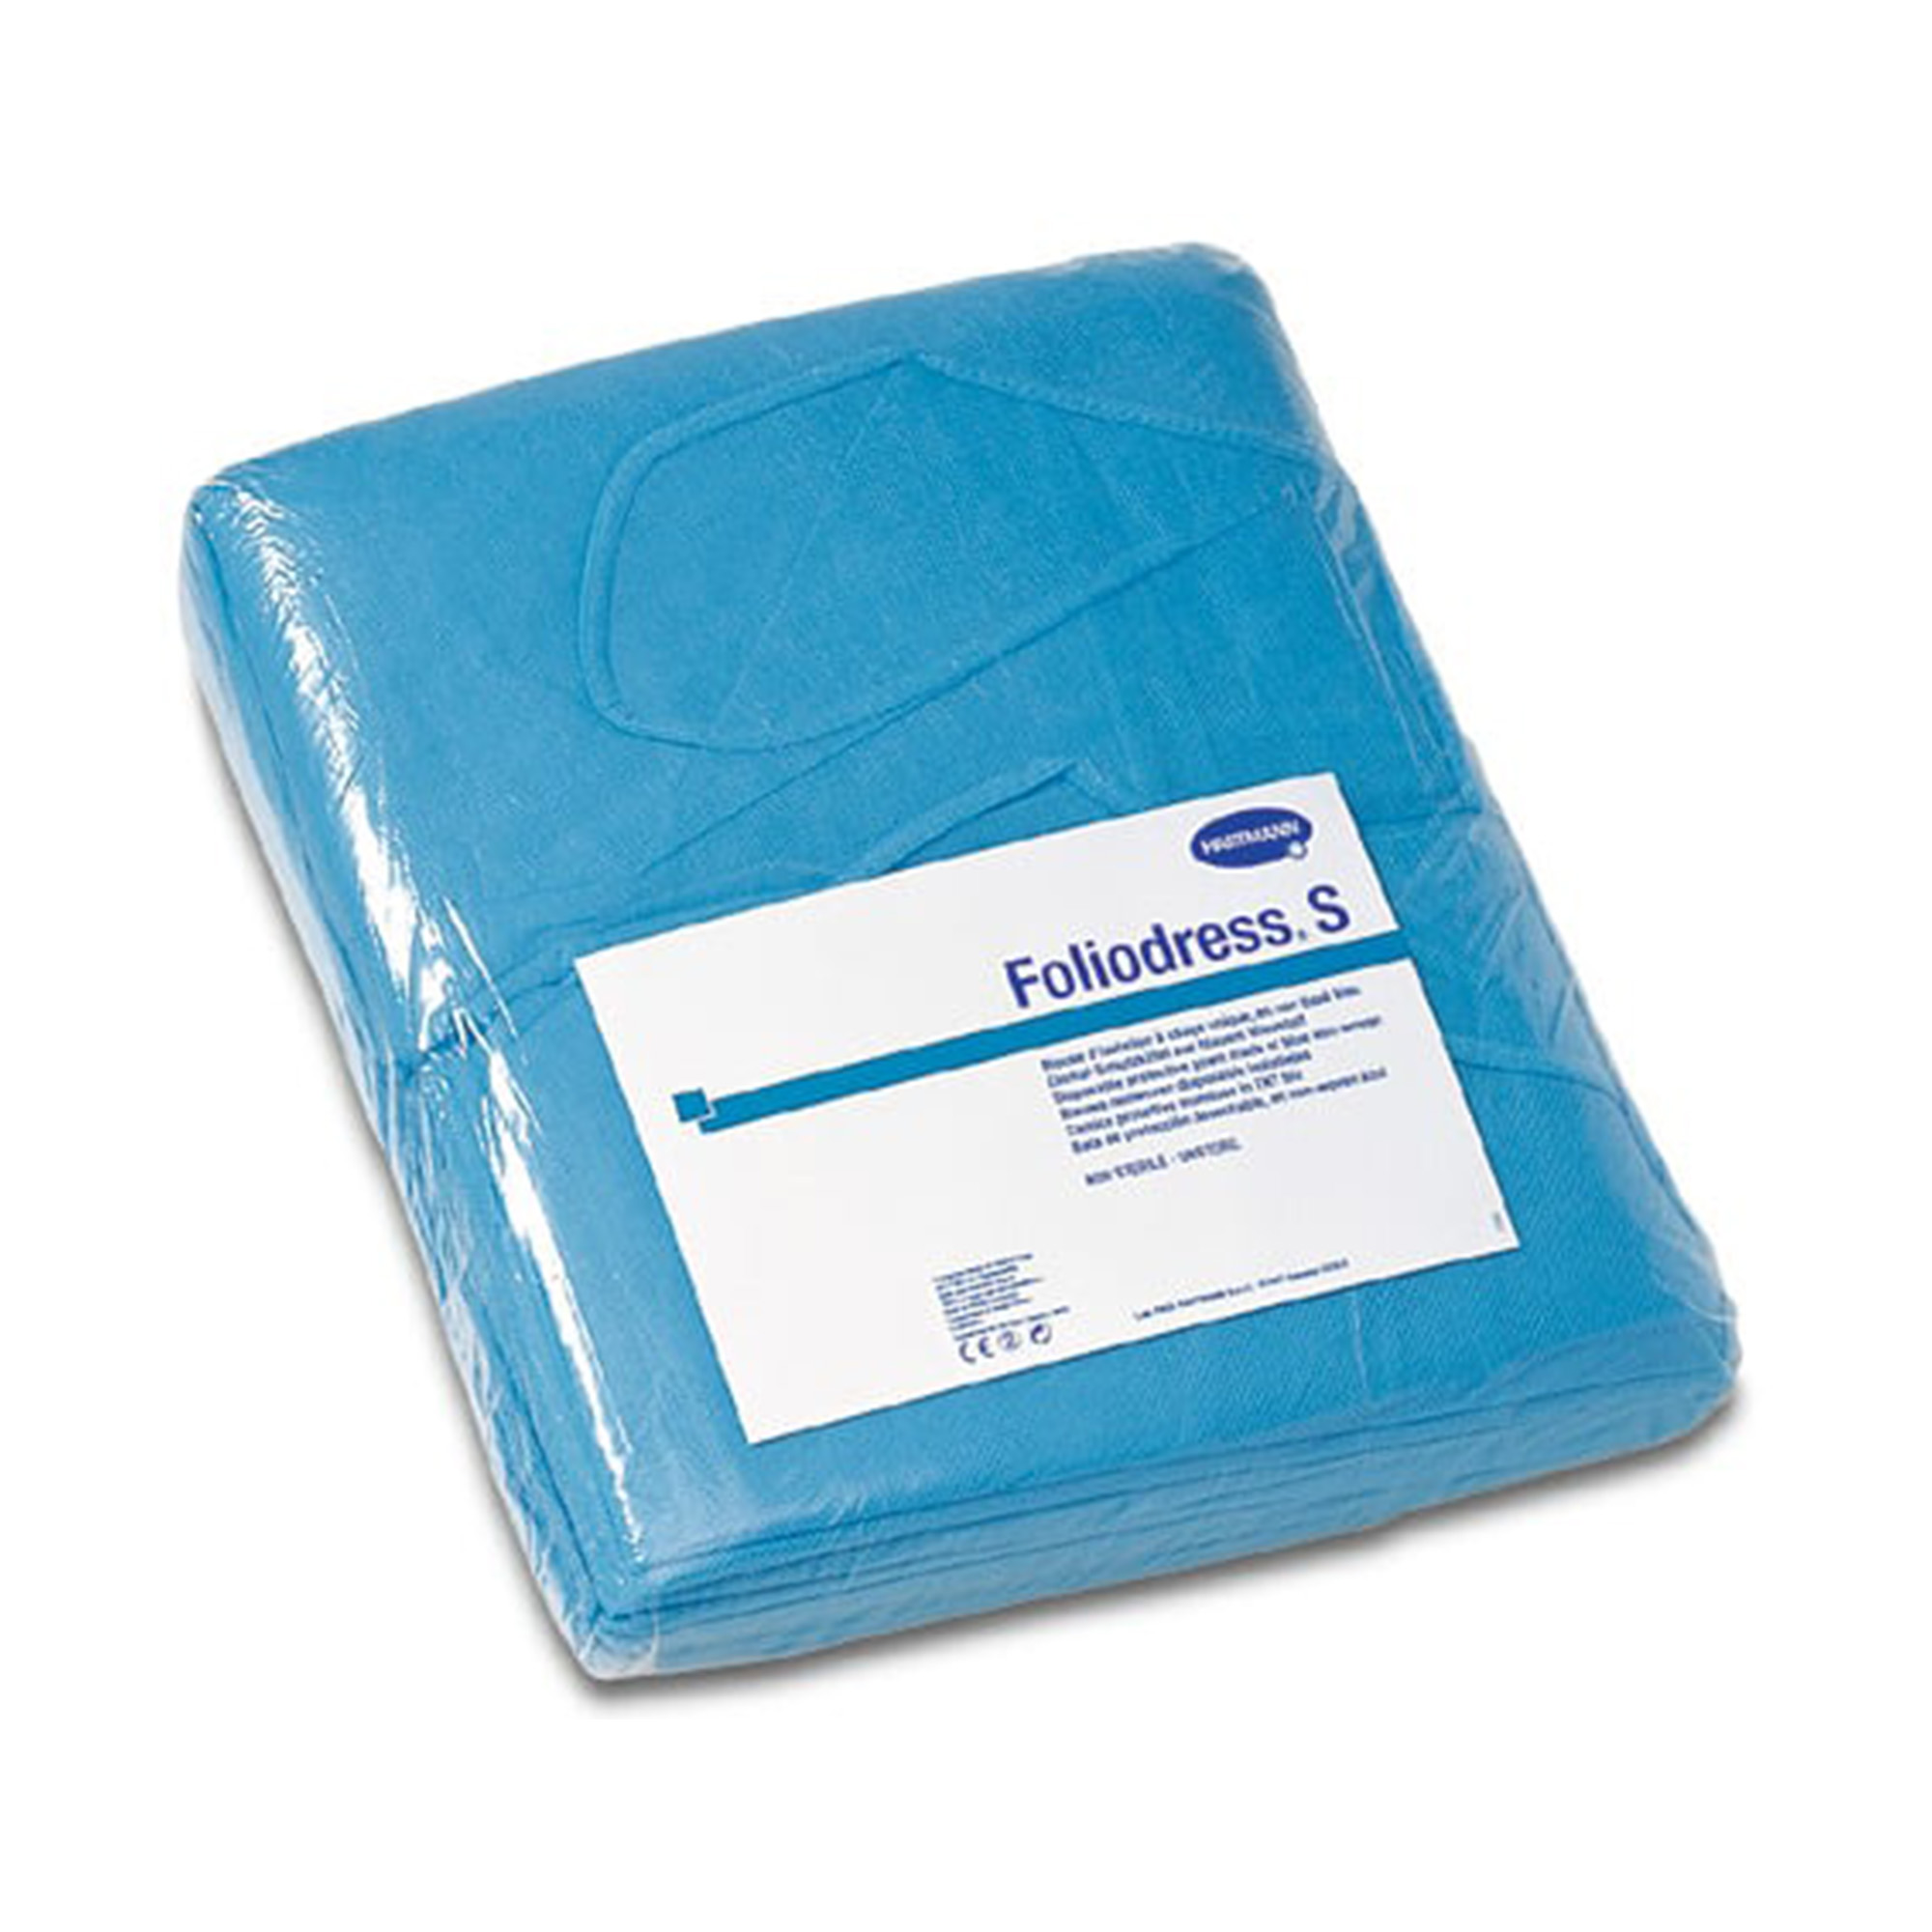 Hartmann Foliodress® S, blue, sterile, 48 pcs.